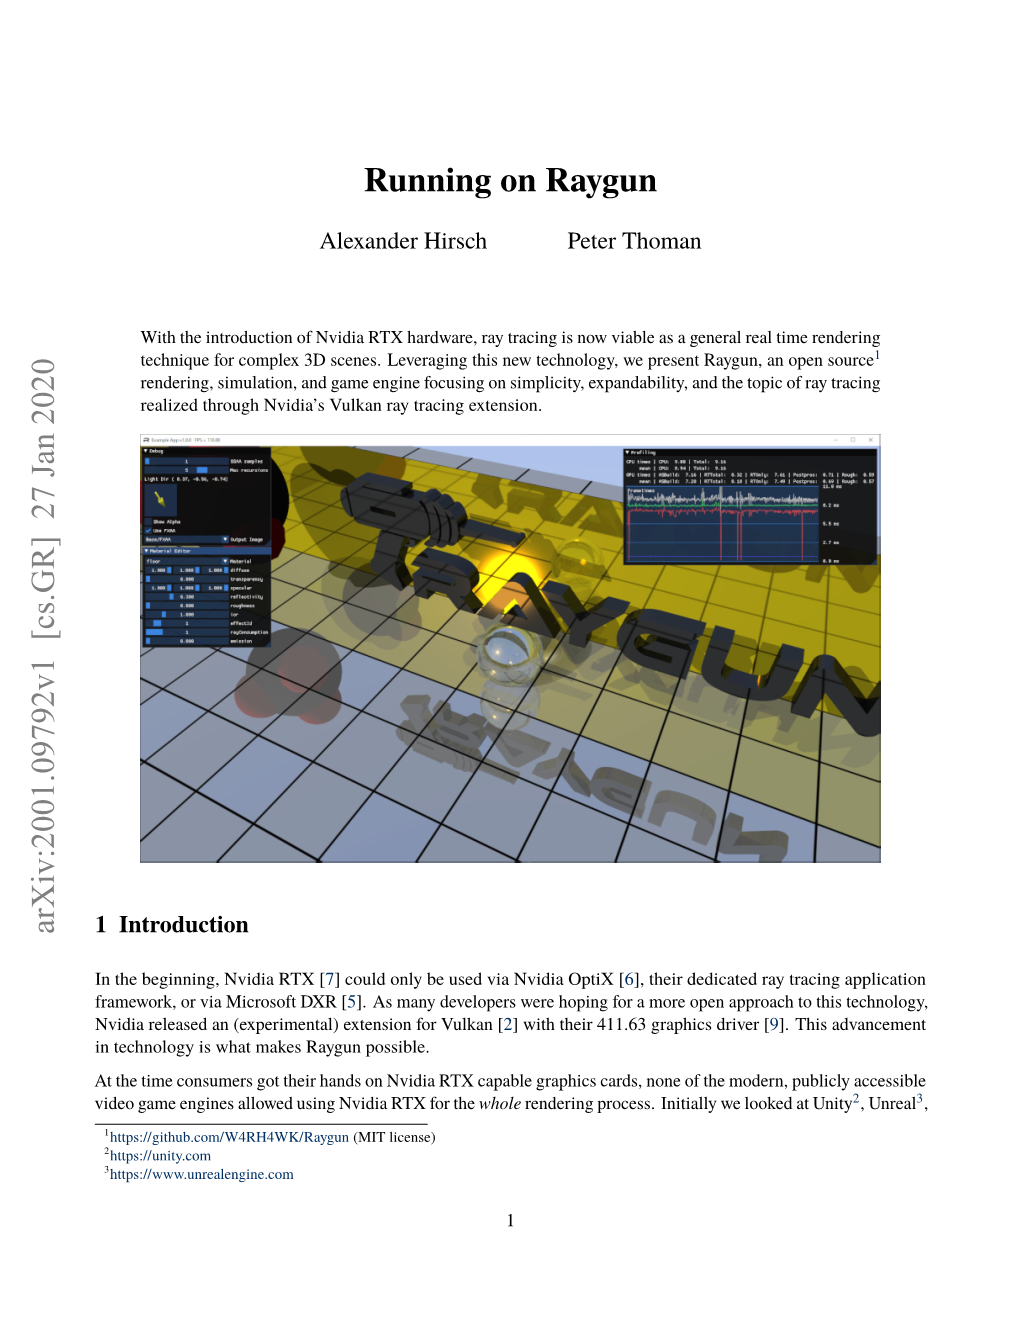 Running on Raygun Arxiv:2001.09792V1 [Cs.GR]